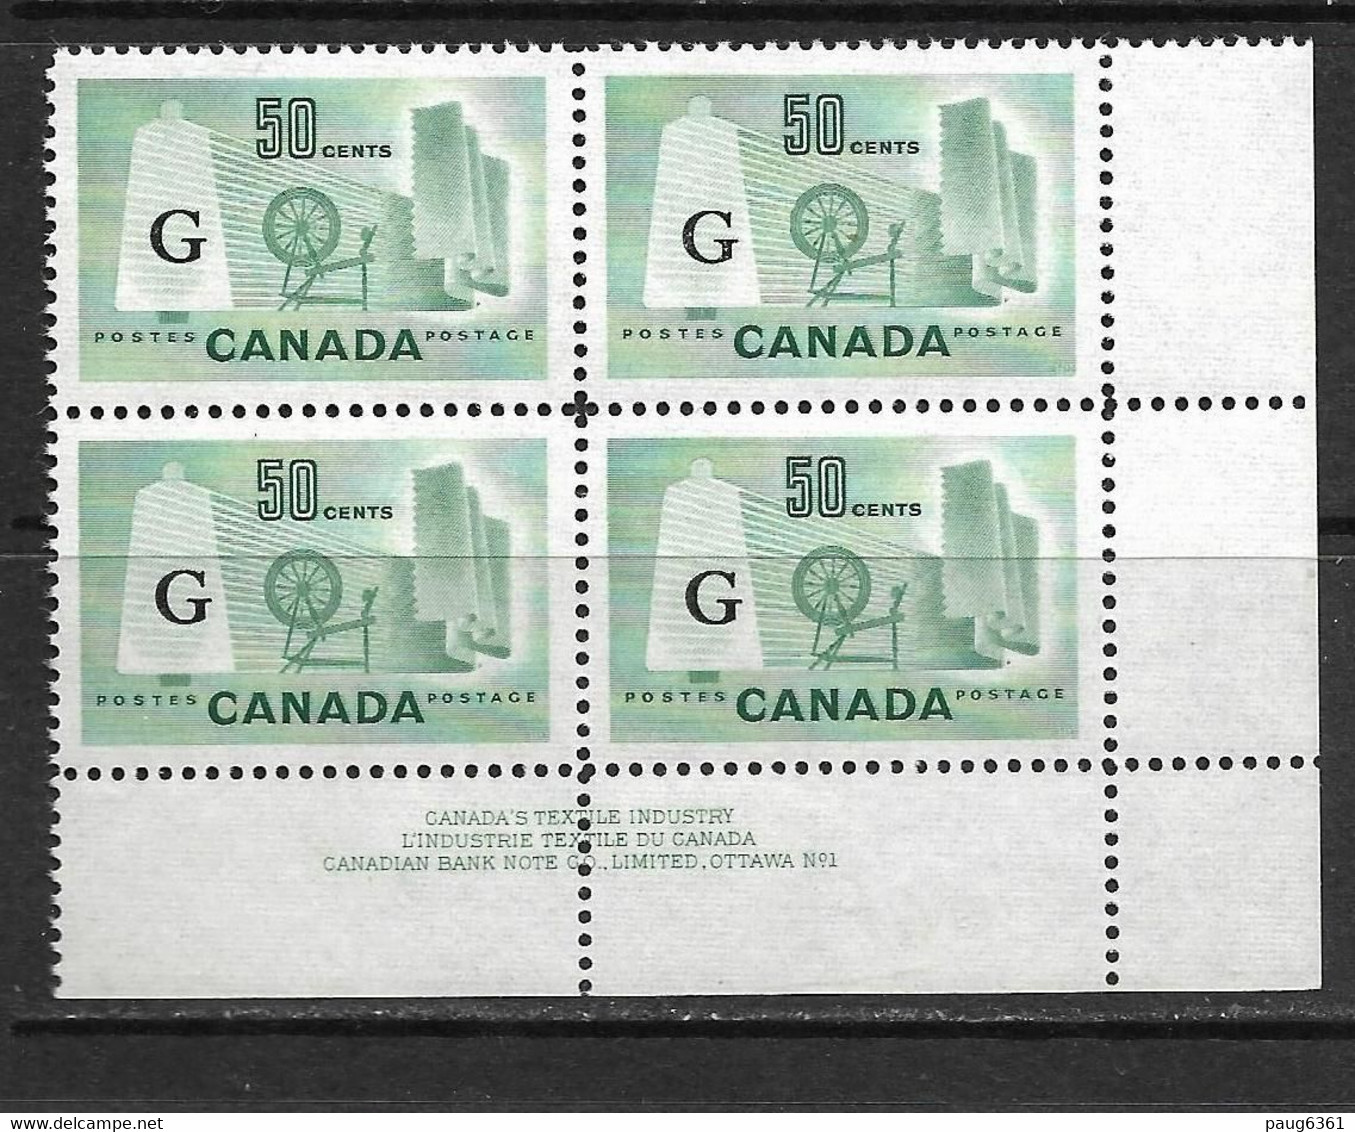 CANADA 1953 SERVICE-INDUSTRIES TEXTILES  BLOC DE 4 YVERT N°S38 NEUF MNH**/MLH* - Surchargés